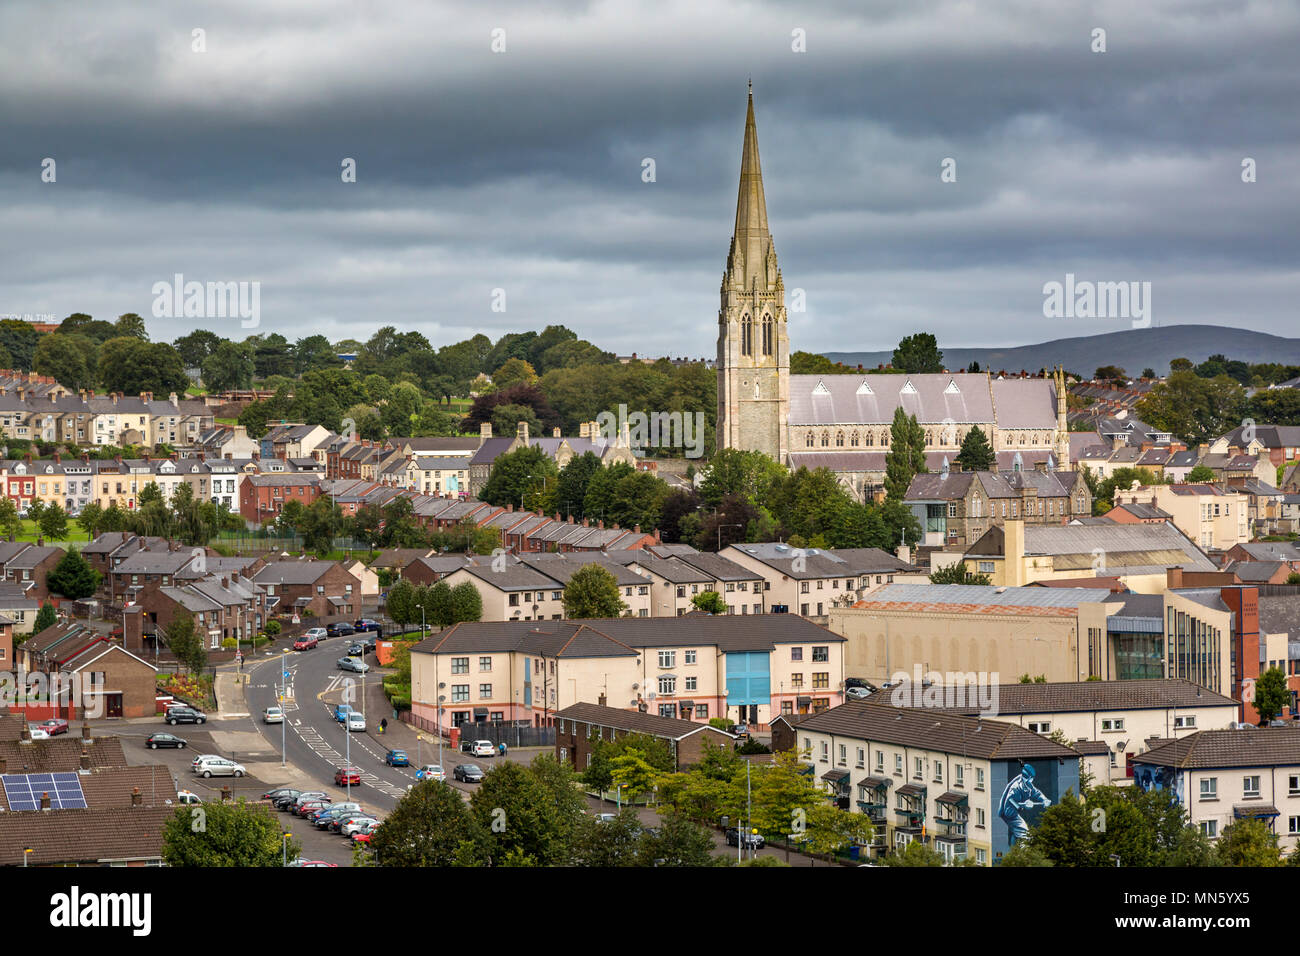 La Cathédrale St Eugene et ville de Londonderry/Derry, comté de Derry, Irlande du Nord, Royaume-Uni Banque D'Images